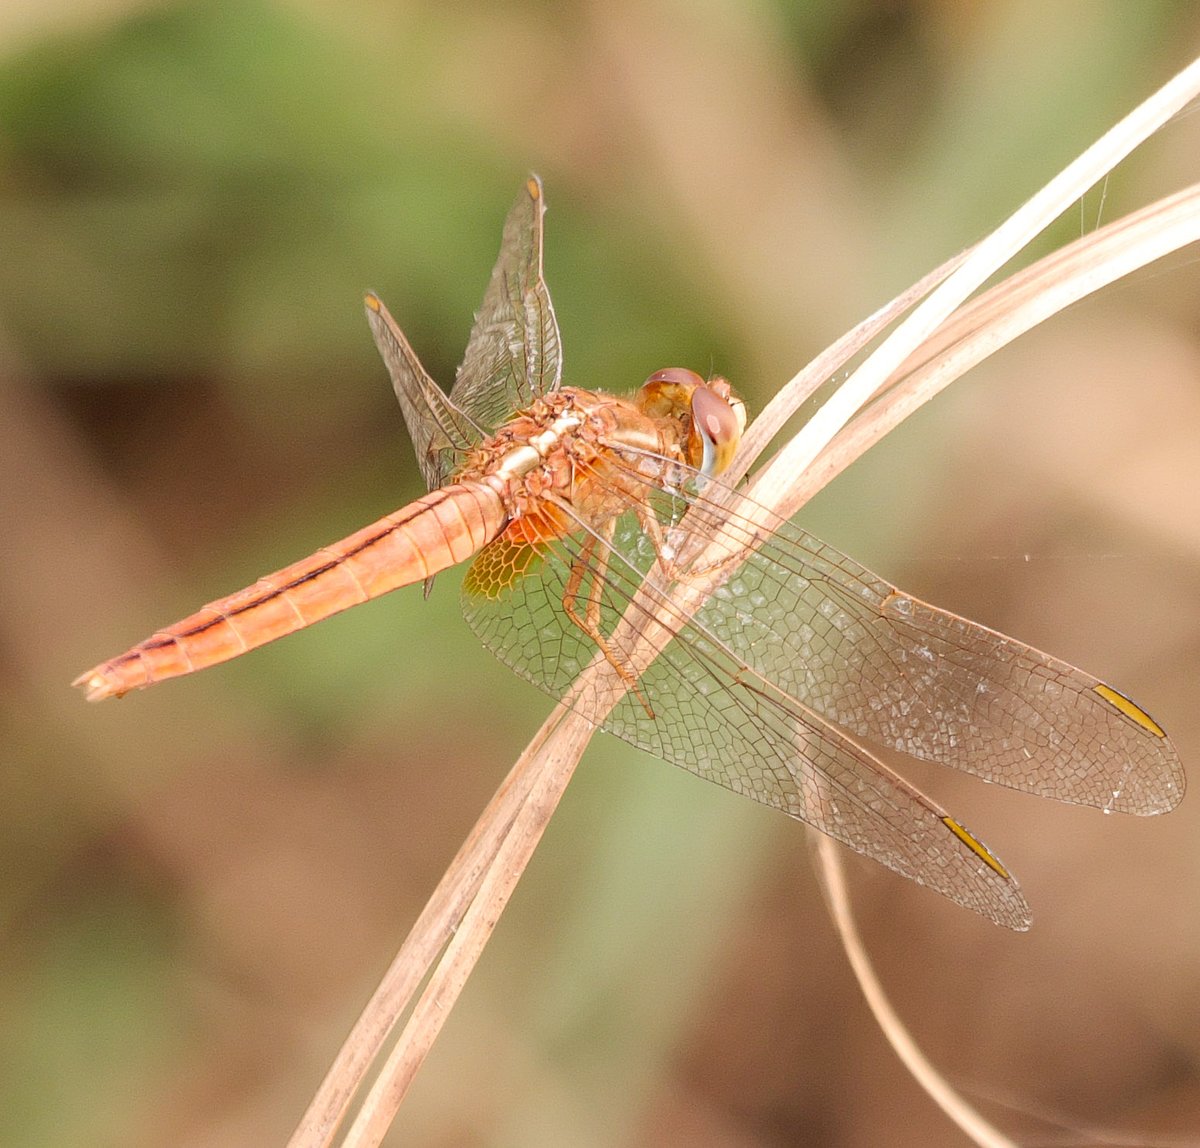 Scarlet skimmer #insects #dragonfly #IndiAves #BBCWildlifePOTD #titlituesday #wildlife #naturephotographyday #TwitterNatureCommunity #photooftheday @NatGeoIndia @NatureIn_Focus